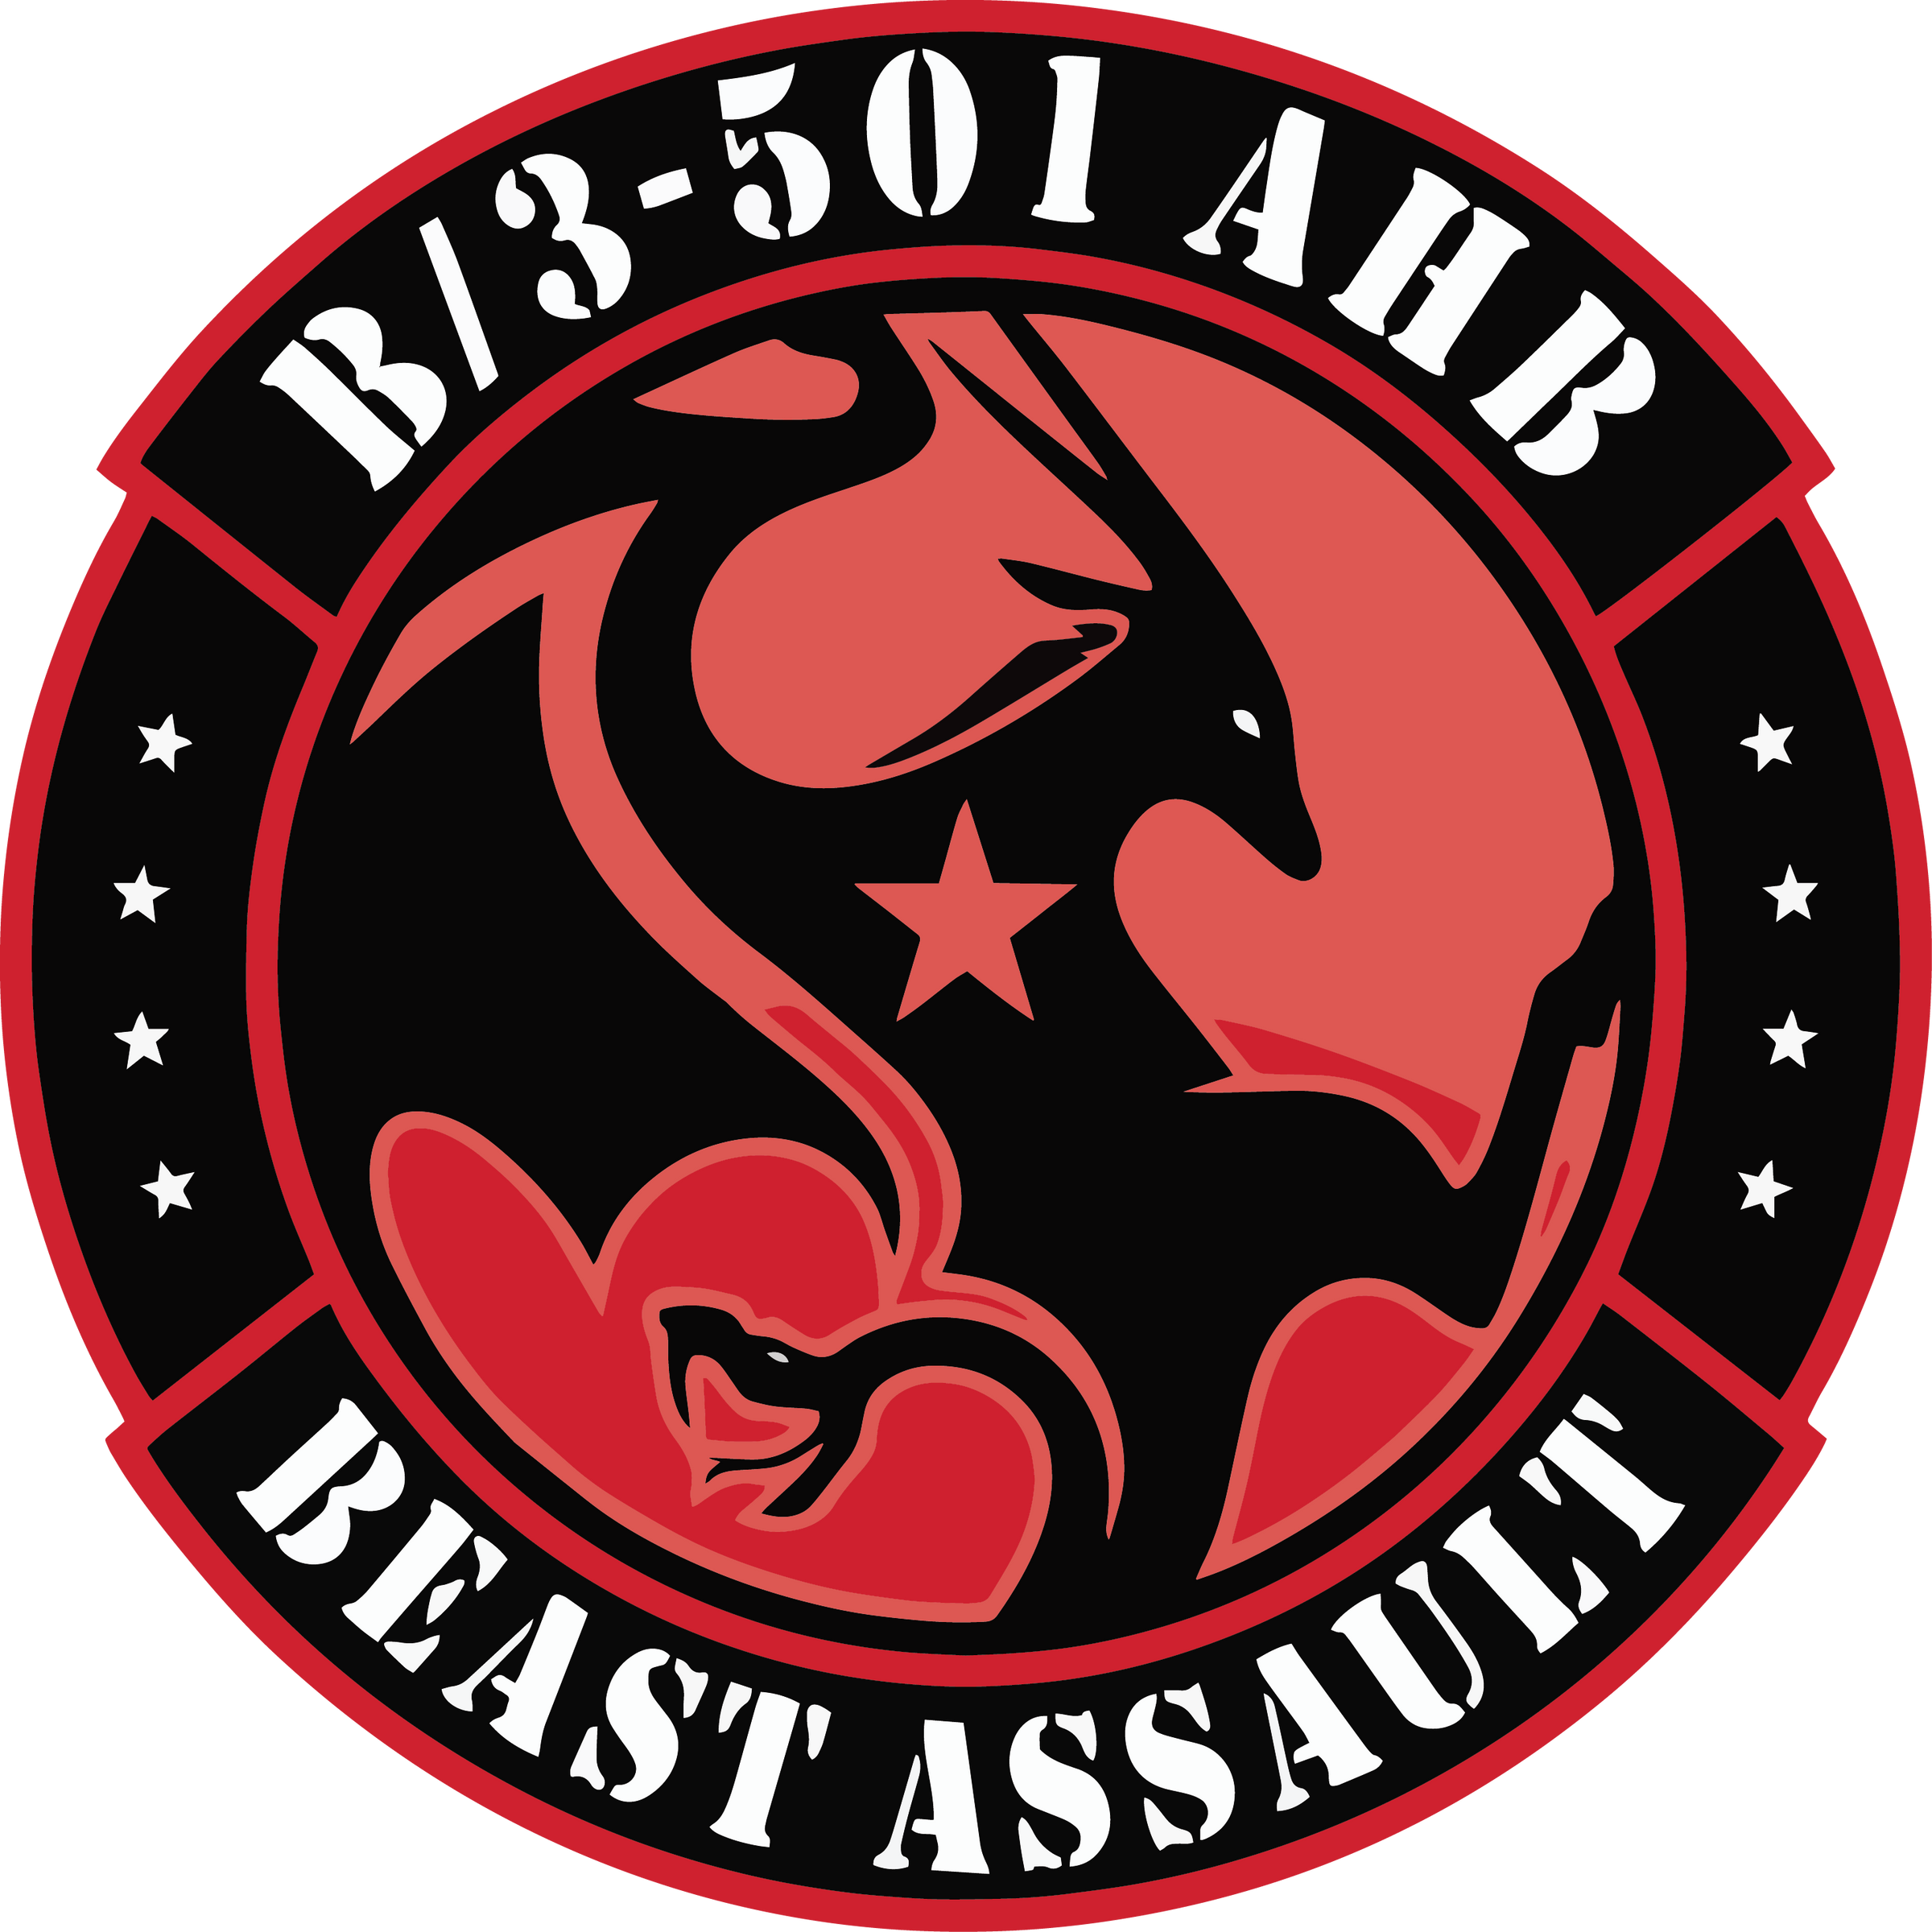 B Co, 3-501 AHB "Beast Assault"